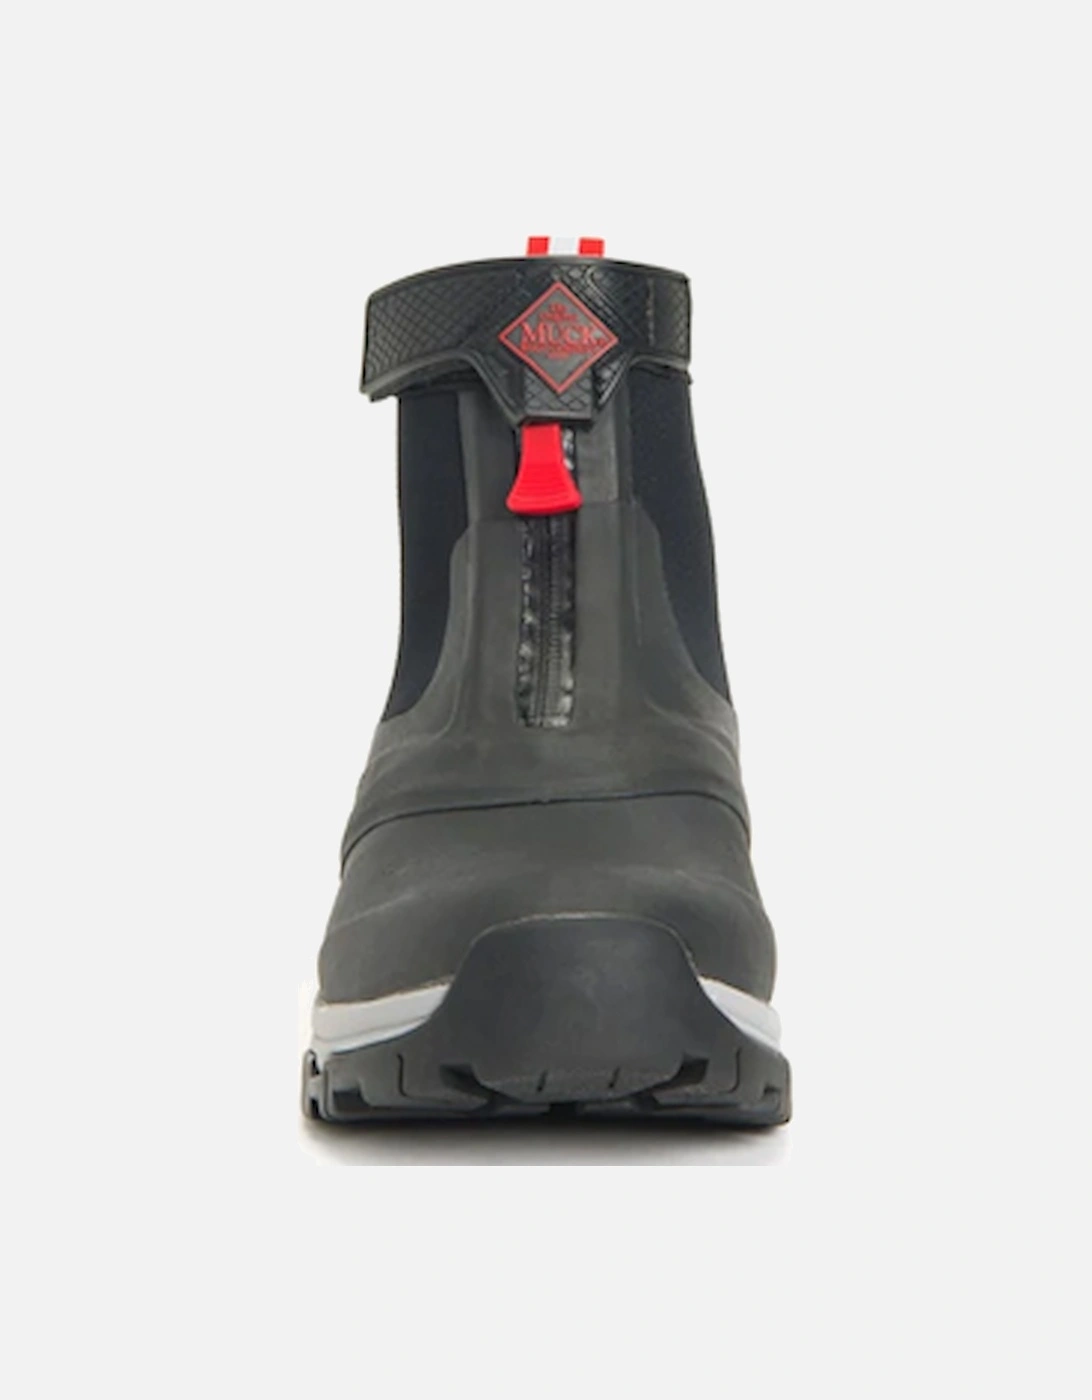 Muck Boots Men's Apex Mid Zip Wellies Grey/Red DFS